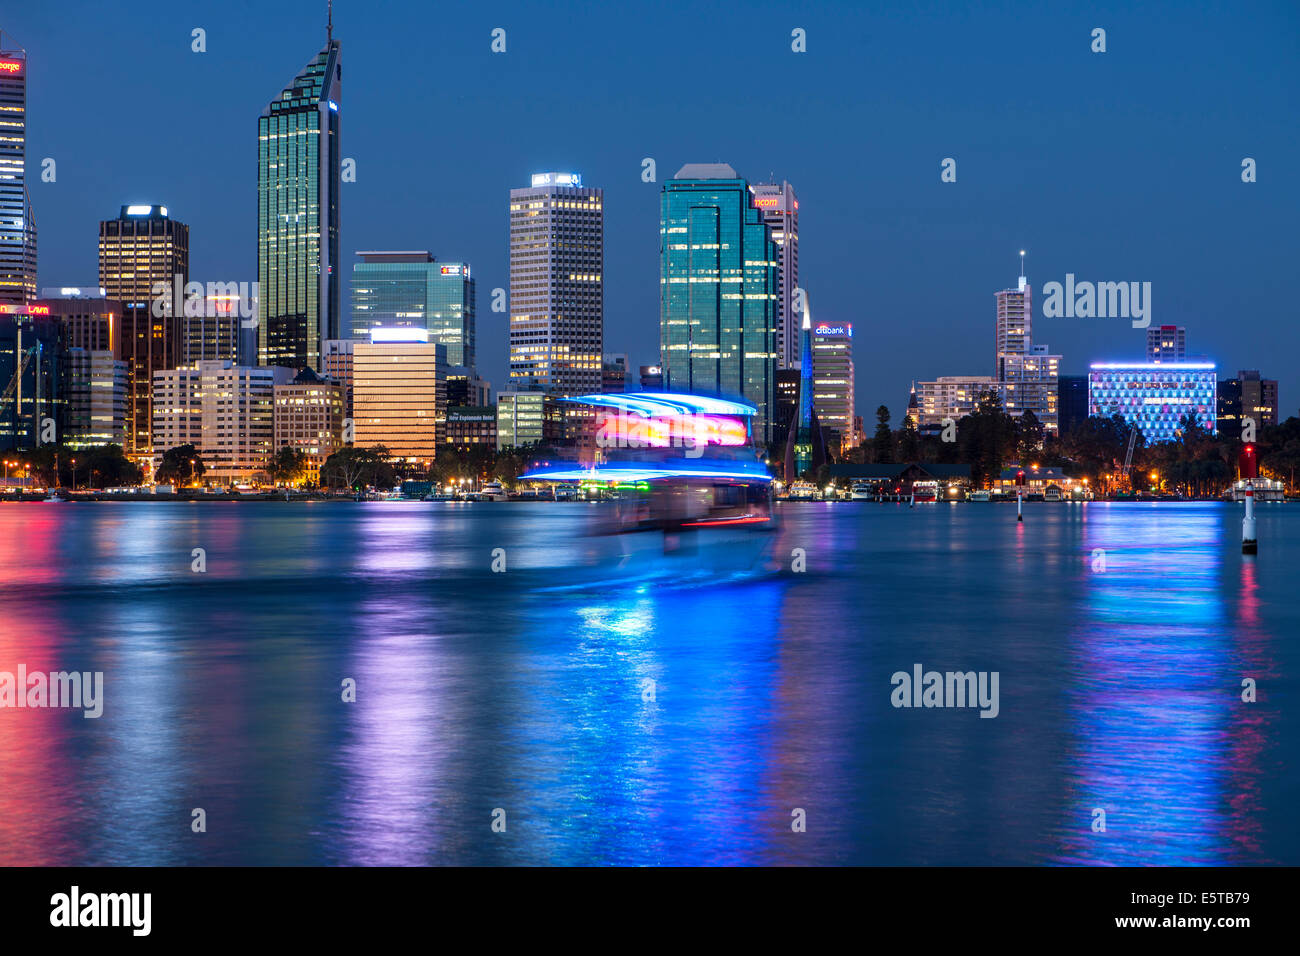 Swan river at night, Perth, WA Stock Photo